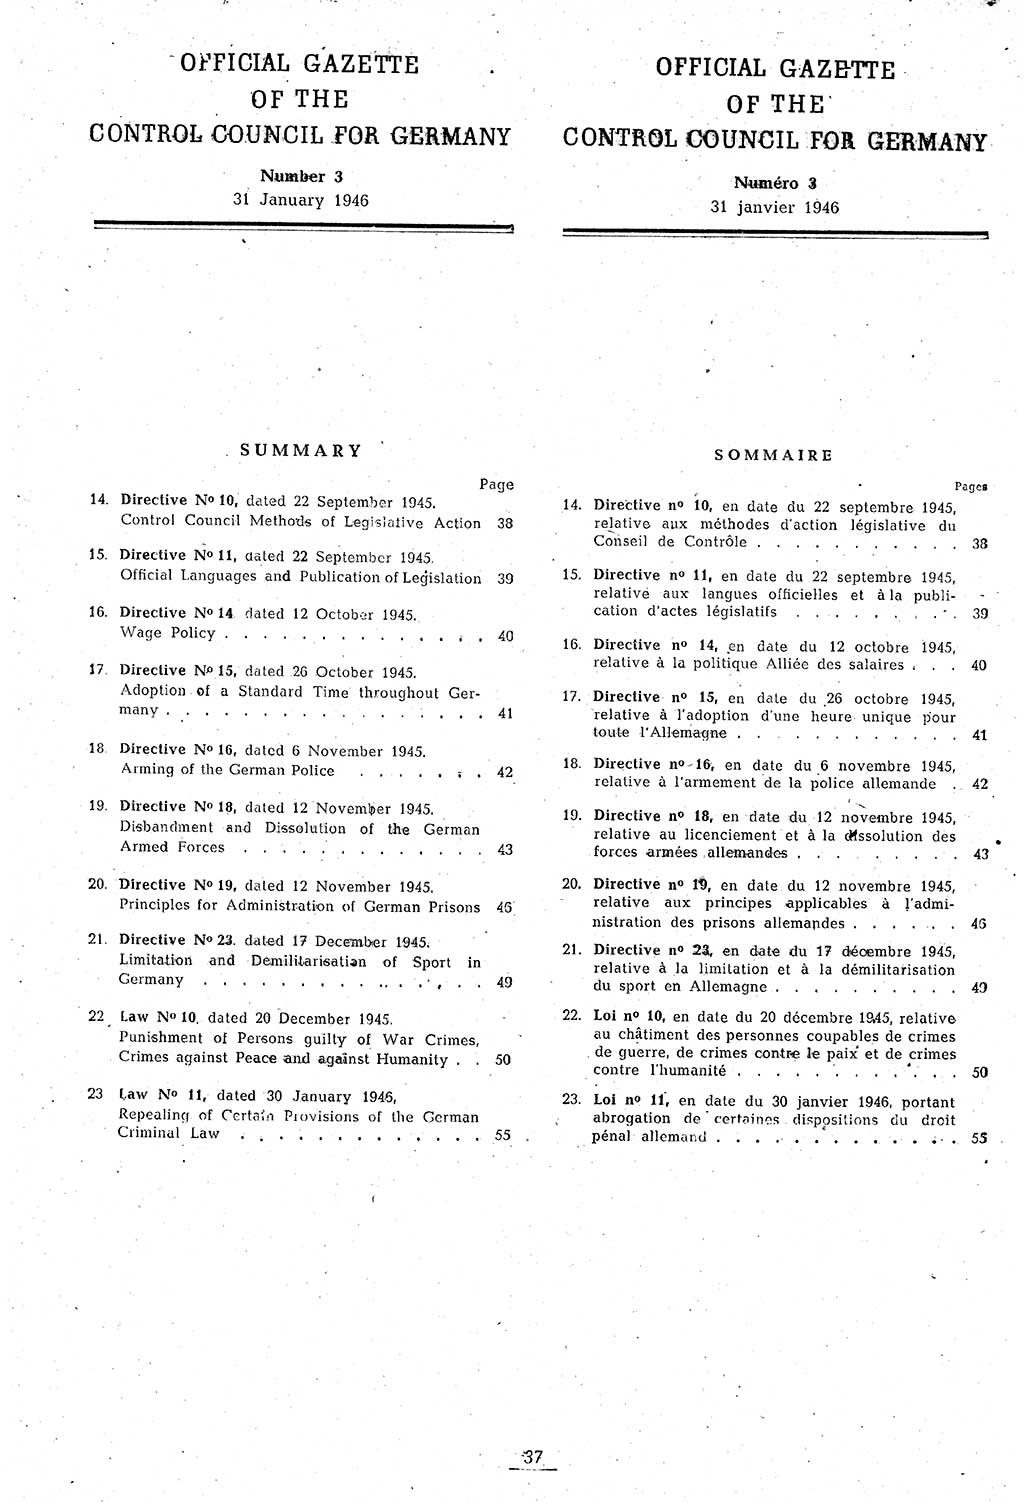 Amtsblatt des Kontrollrats (ABlKR) in Deutschland 1946, Seite 37/1 (ABlKR Dtl. 1946, S. 37/1)